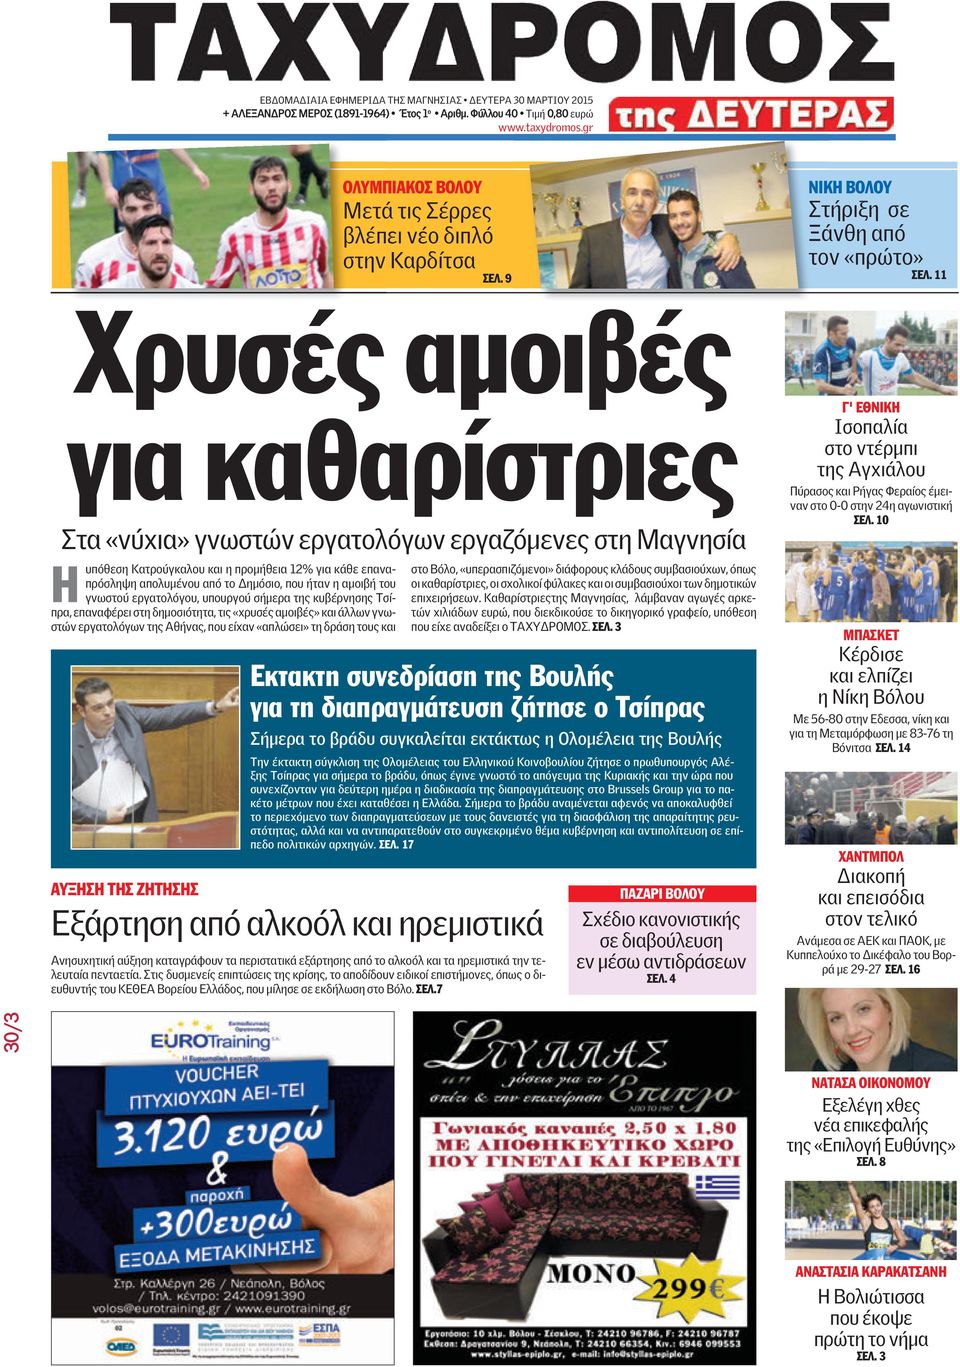 αμοιβή του γνωστού εργατολόγου, υπουργού σήμερα της κυβέρνησης Τσίπρα, επαναφέρει στη δημοσιότητα, τις «χρυσές αμοιβές» και άλλων γνωστών εργατολόγων της Αθήνας, που είχαν «απλώσει» τη δράση τους και